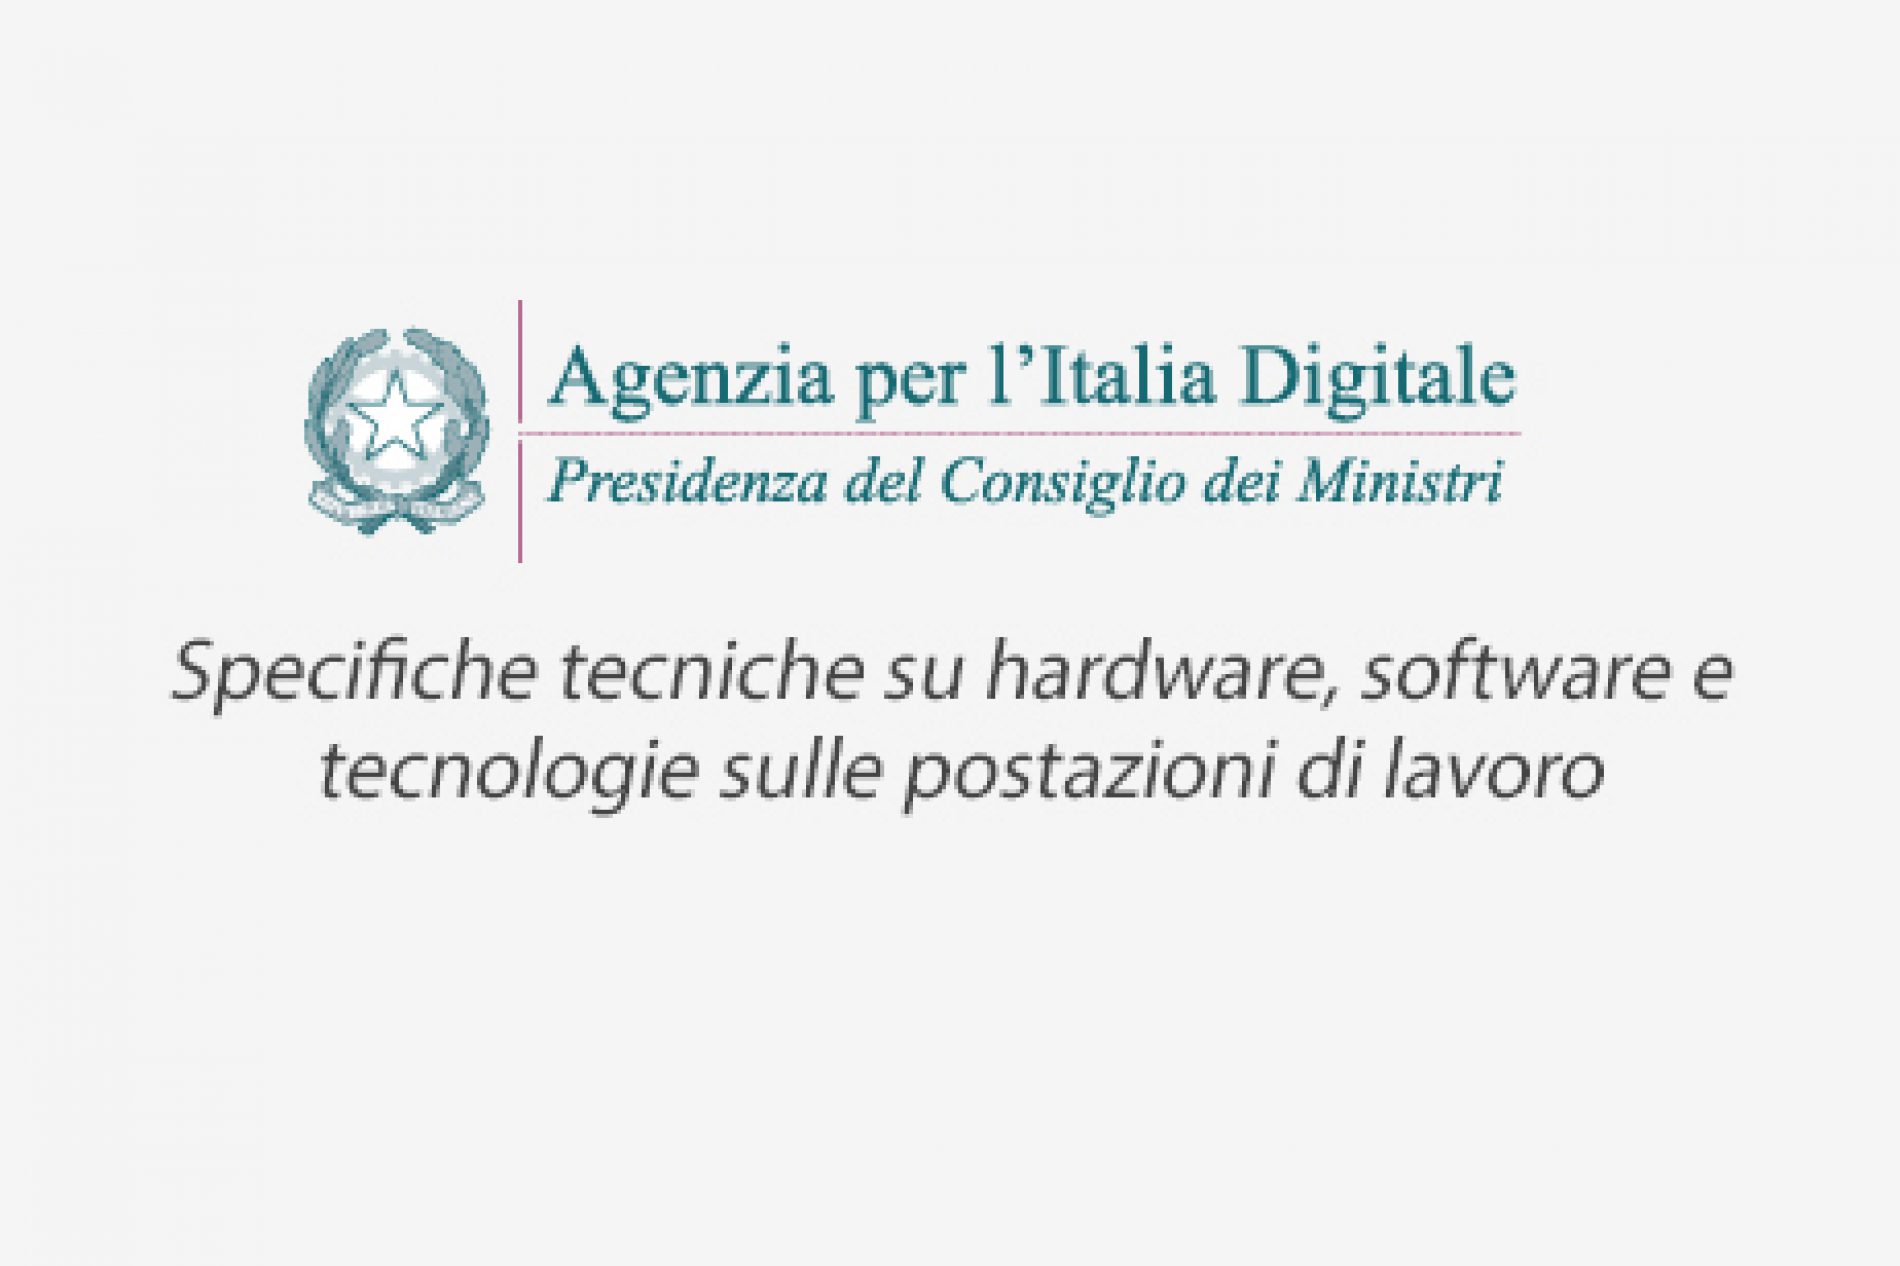 Agenzia per l’Italia Digitale: specifiche tecniche su hardware, software e tecnologie sulle postazioni di lavoro